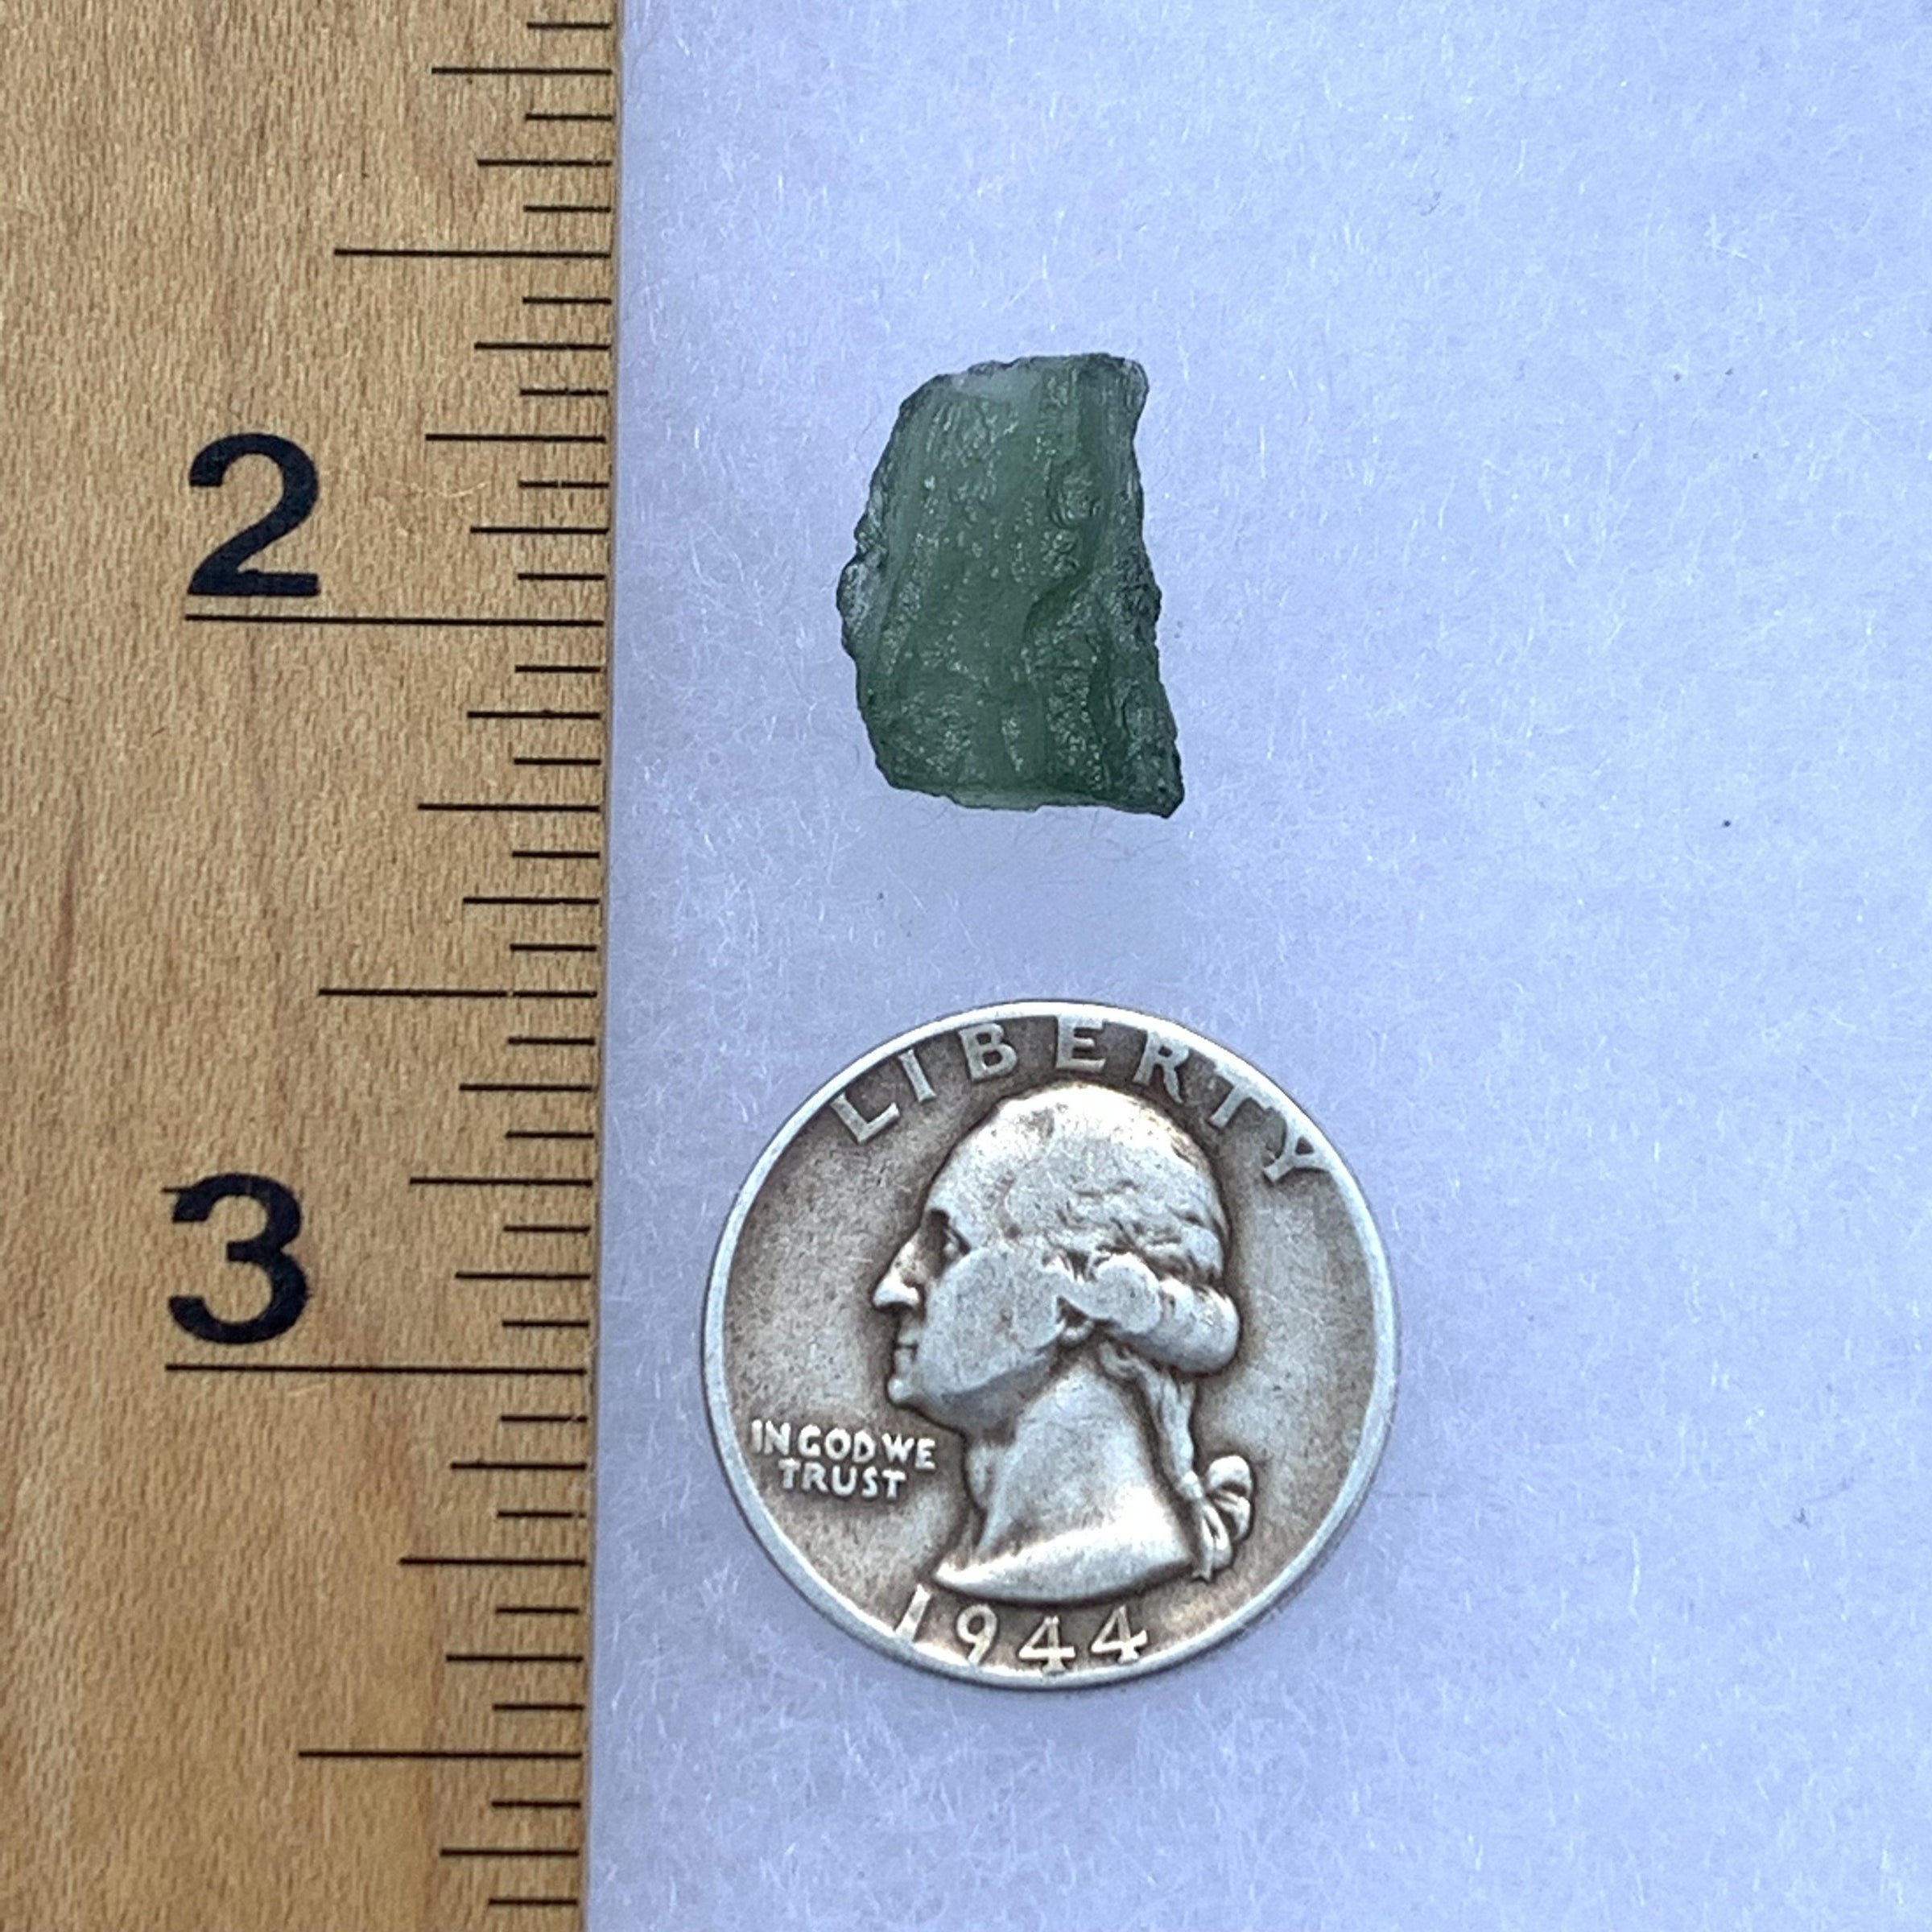 Moldavite Genuine Certified 1.5 grams